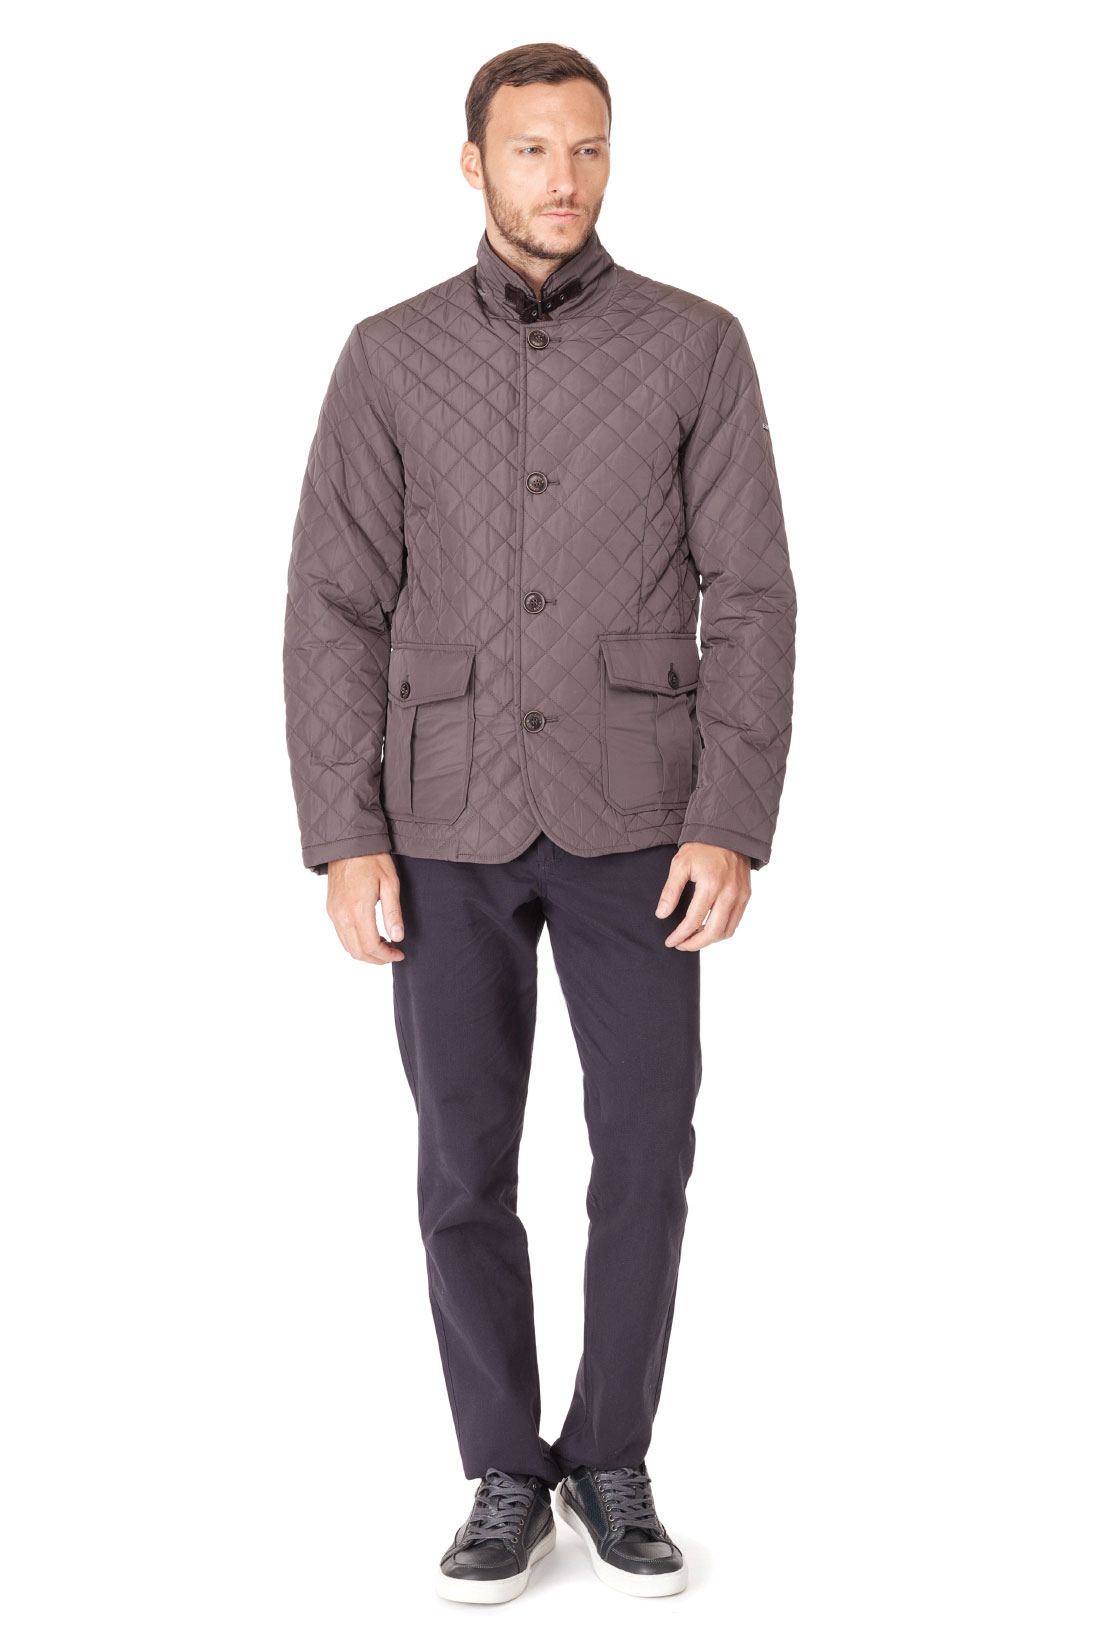 Классическая стёганая куртка (арт. baon B537023), размер L, цвет серый Классическая стёганая куртка (арт. baon B537023) - фото 5